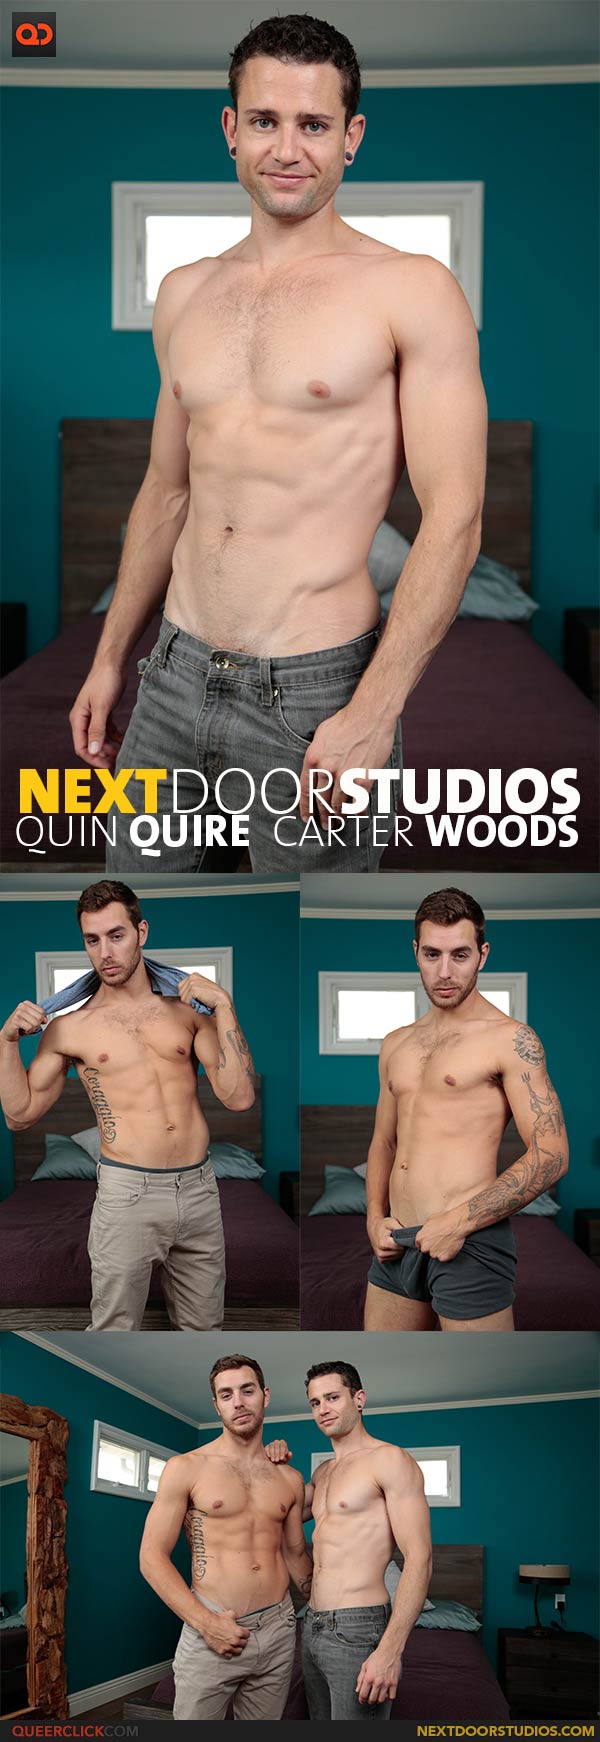 Next Door Studios:  Carter Woods and Quin Quire